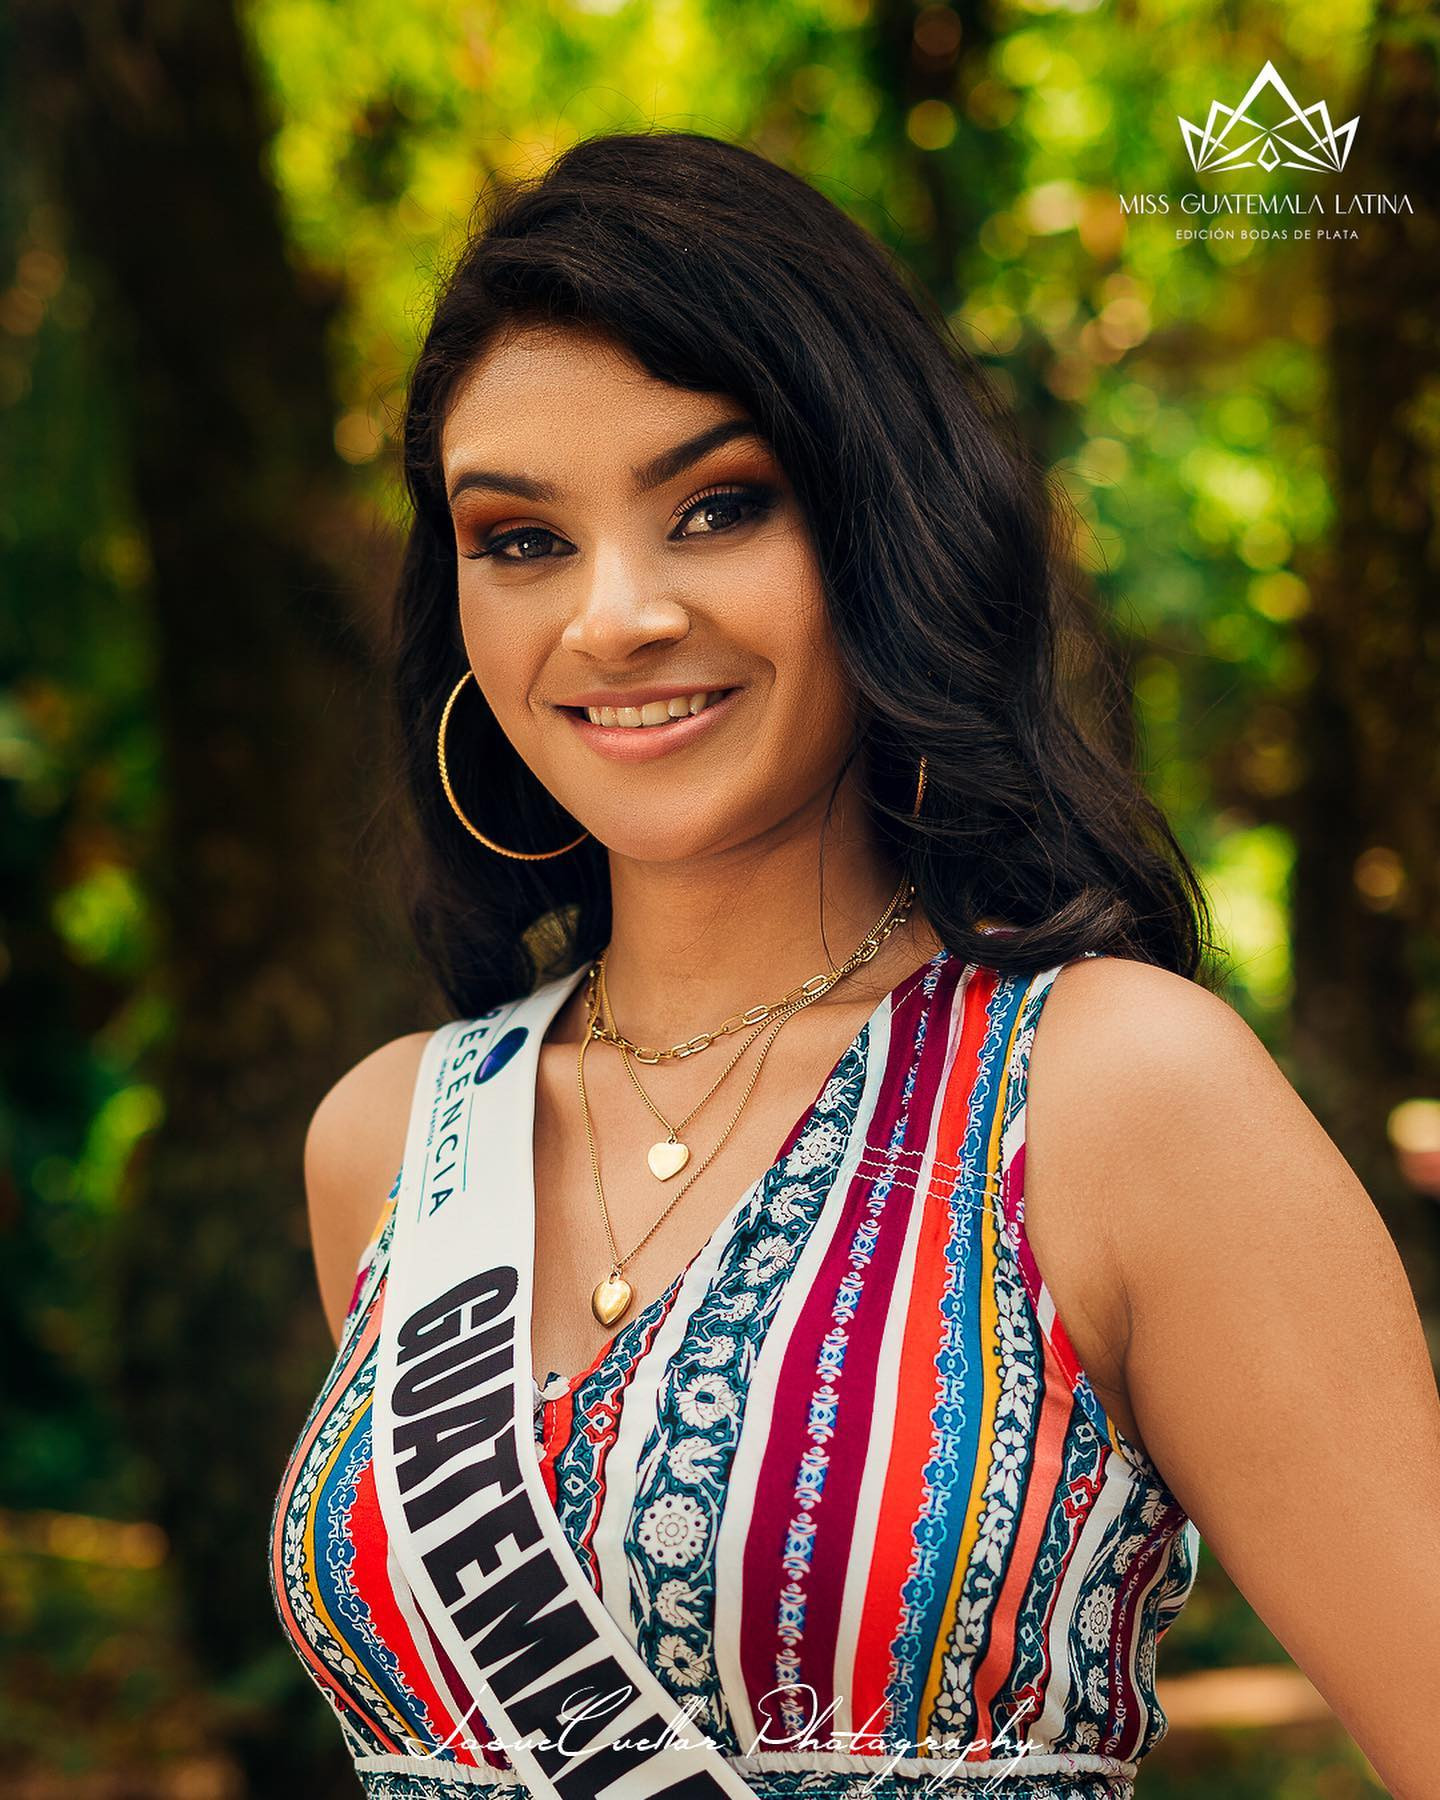 guatemala - candidatas a miss guatemala latina 2021. final: 30 de abril. - Página 8 BFw2J1